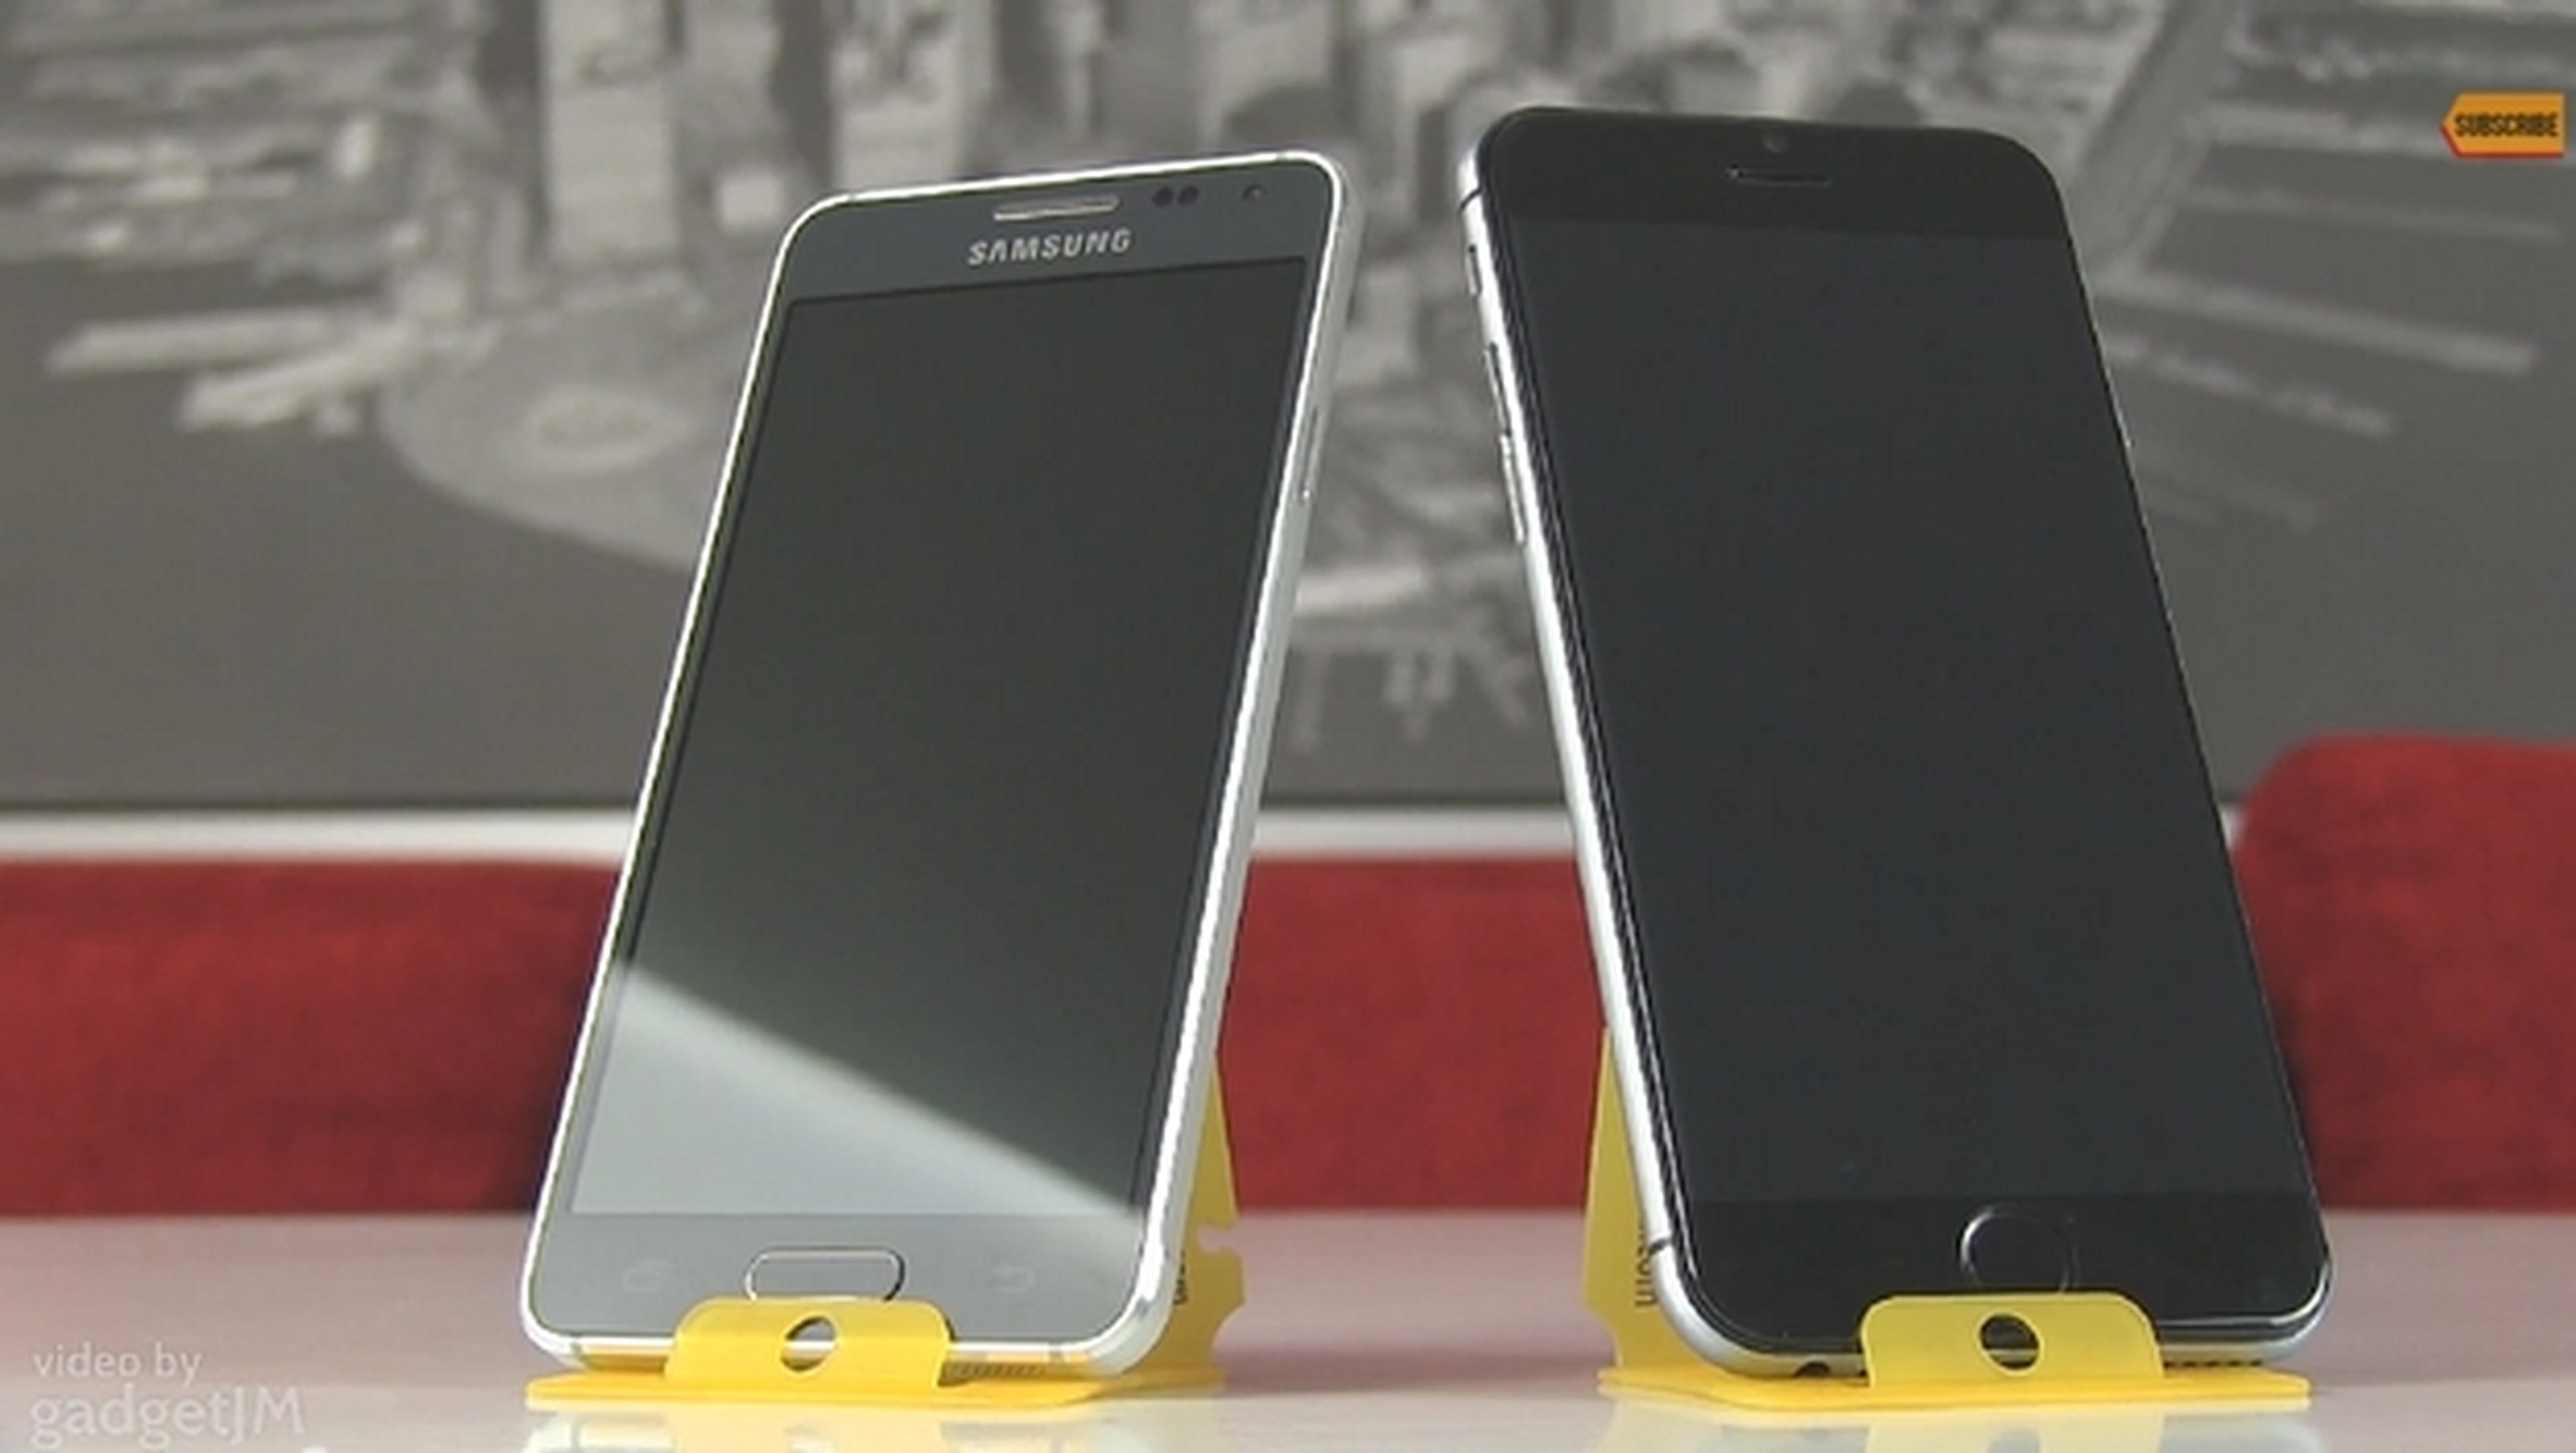 Comparativa de tamaño del iPhone 6 frente al Samsung Galaxy Alpha (vídeo)